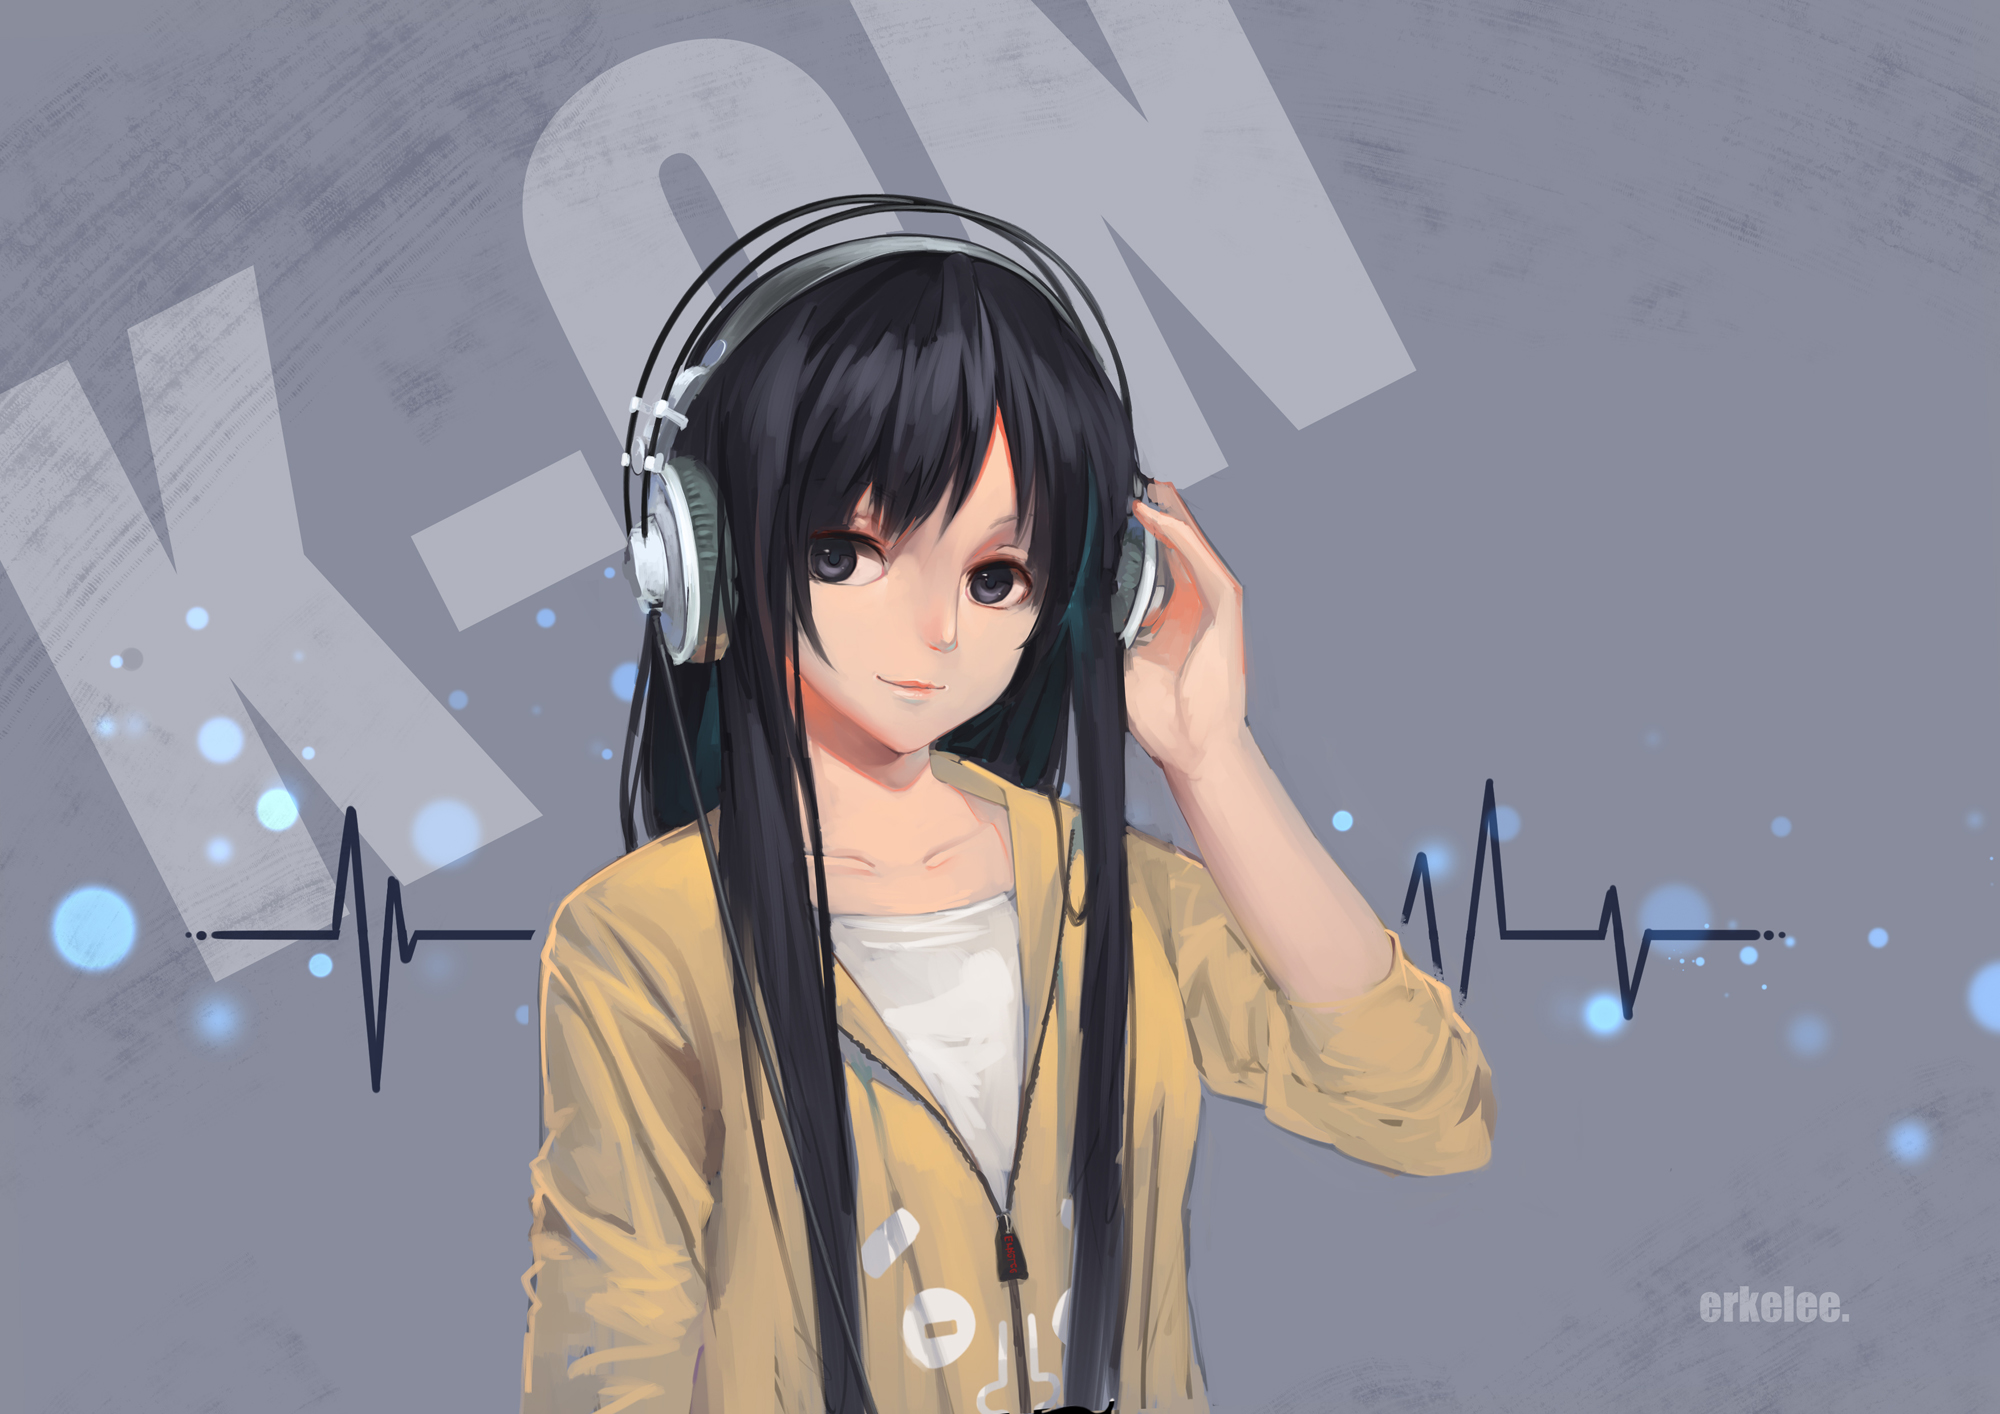 K On Akiyama Mio Black Eyes Black Hair Erkelee Headphones K On Wallpapers Hd Desktop And Mobile Backgrounds